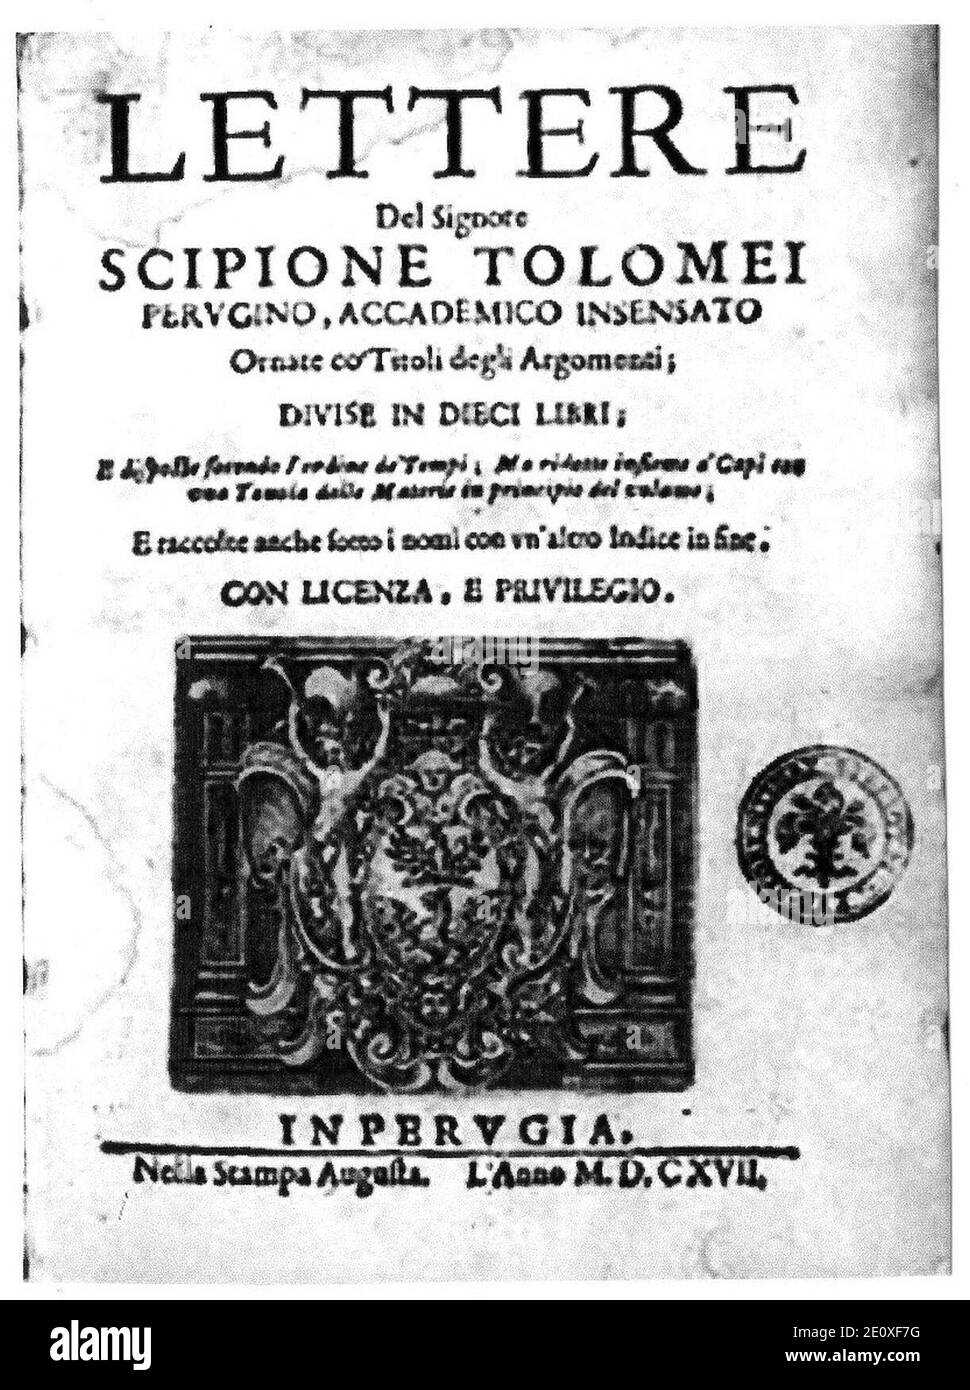 Lettere - Scipione Tolomei - Buchcover. Stockfoto